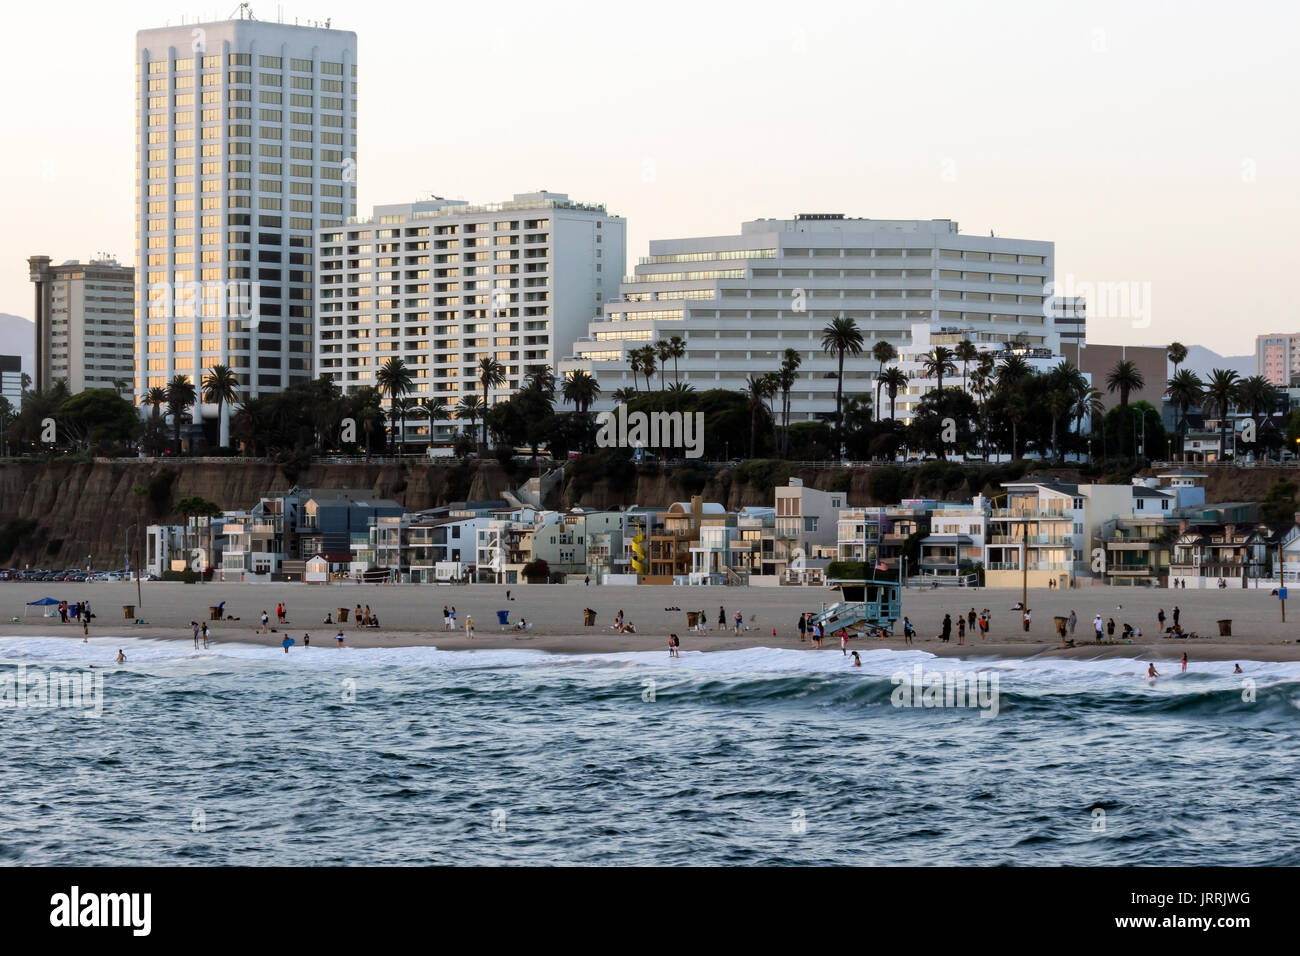 Playas de Santa Monica, cercano a la Ciudad de Los Angeles CA, la Foto fue tomada desde El Muelle de Santa Monica antes del anochecer Stockfoto